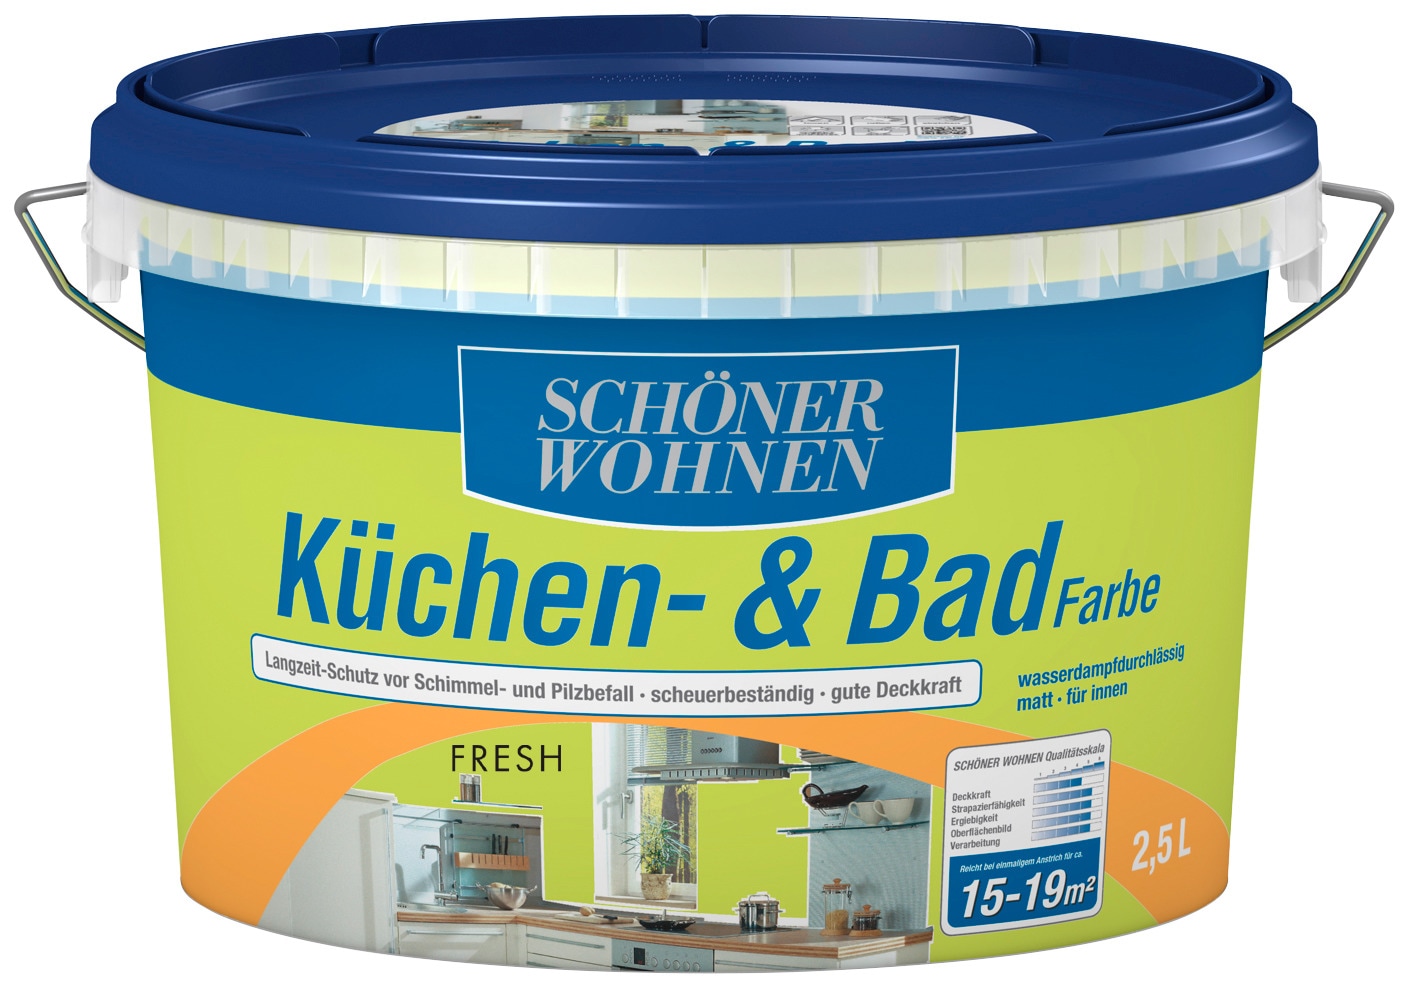 SCHÖNER WOHNEN FARBE Wandfarbe »Küchen- & Badfarbe«, 2,5 Liter, fresh, Langzeitschutz vor Schimmel- und Pilzbefall